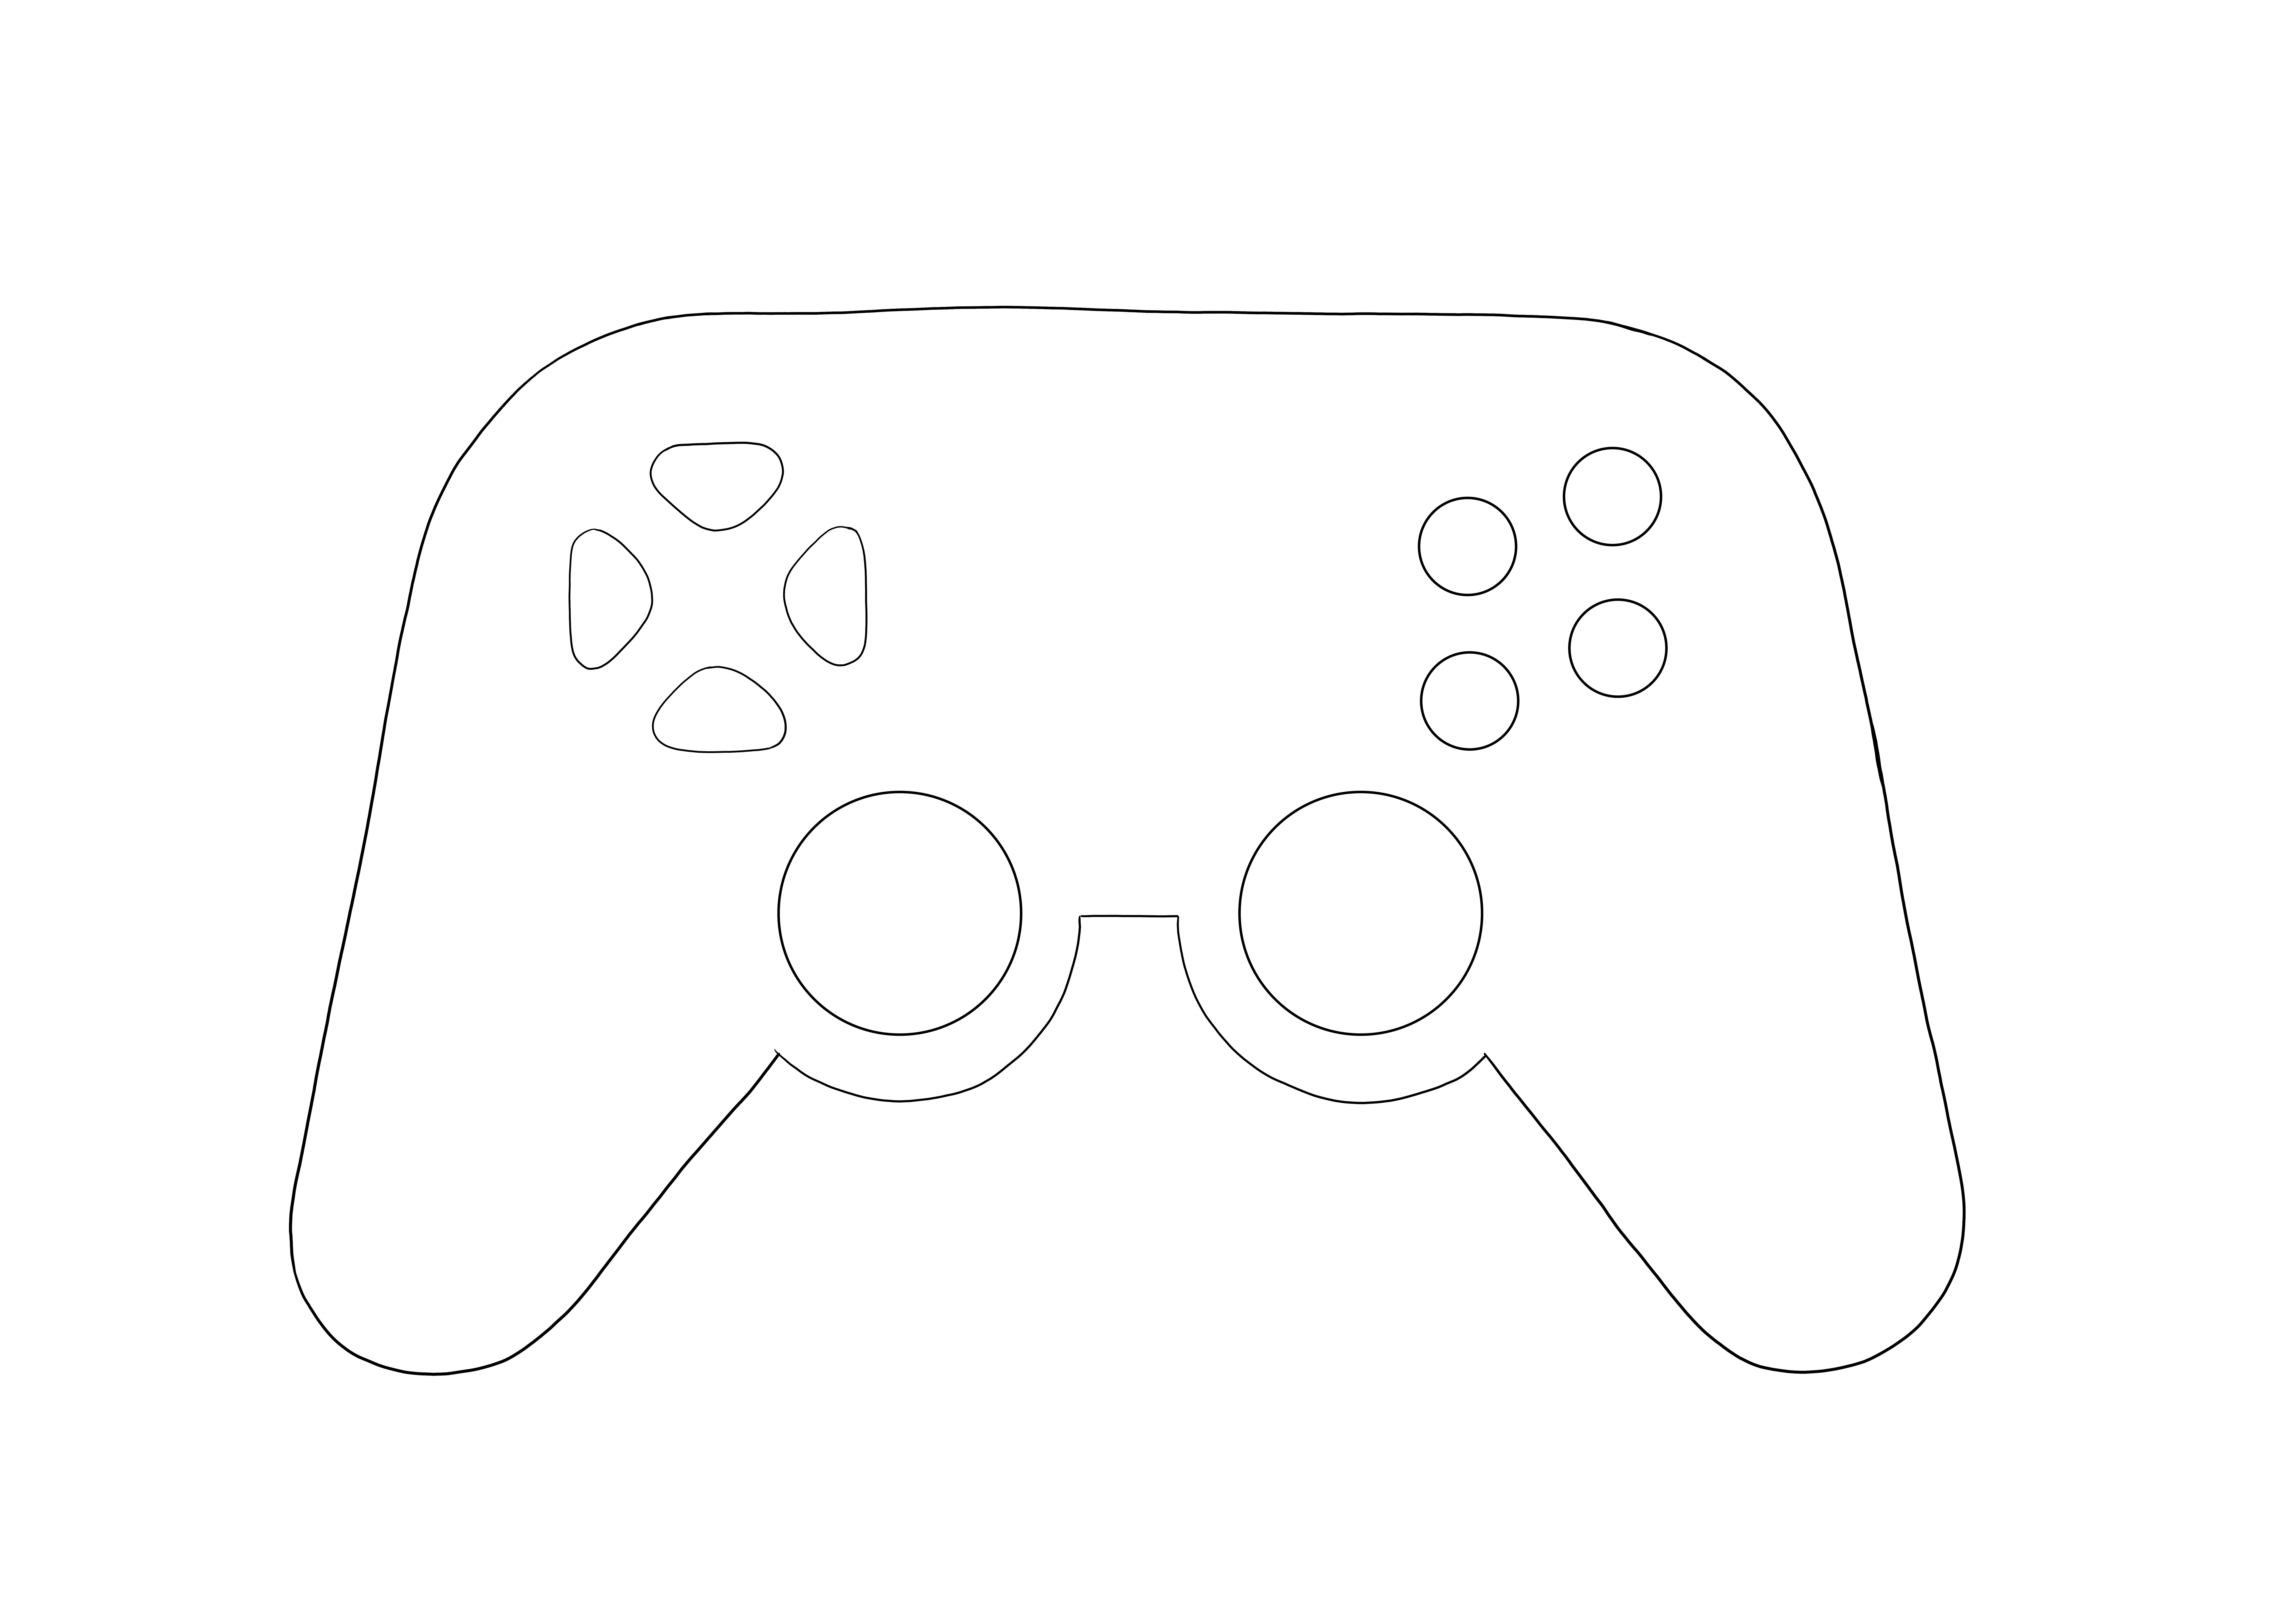 Joystick per giochi per computer semplice da colorare e scaricare l'immagine per gli amanti del gioco